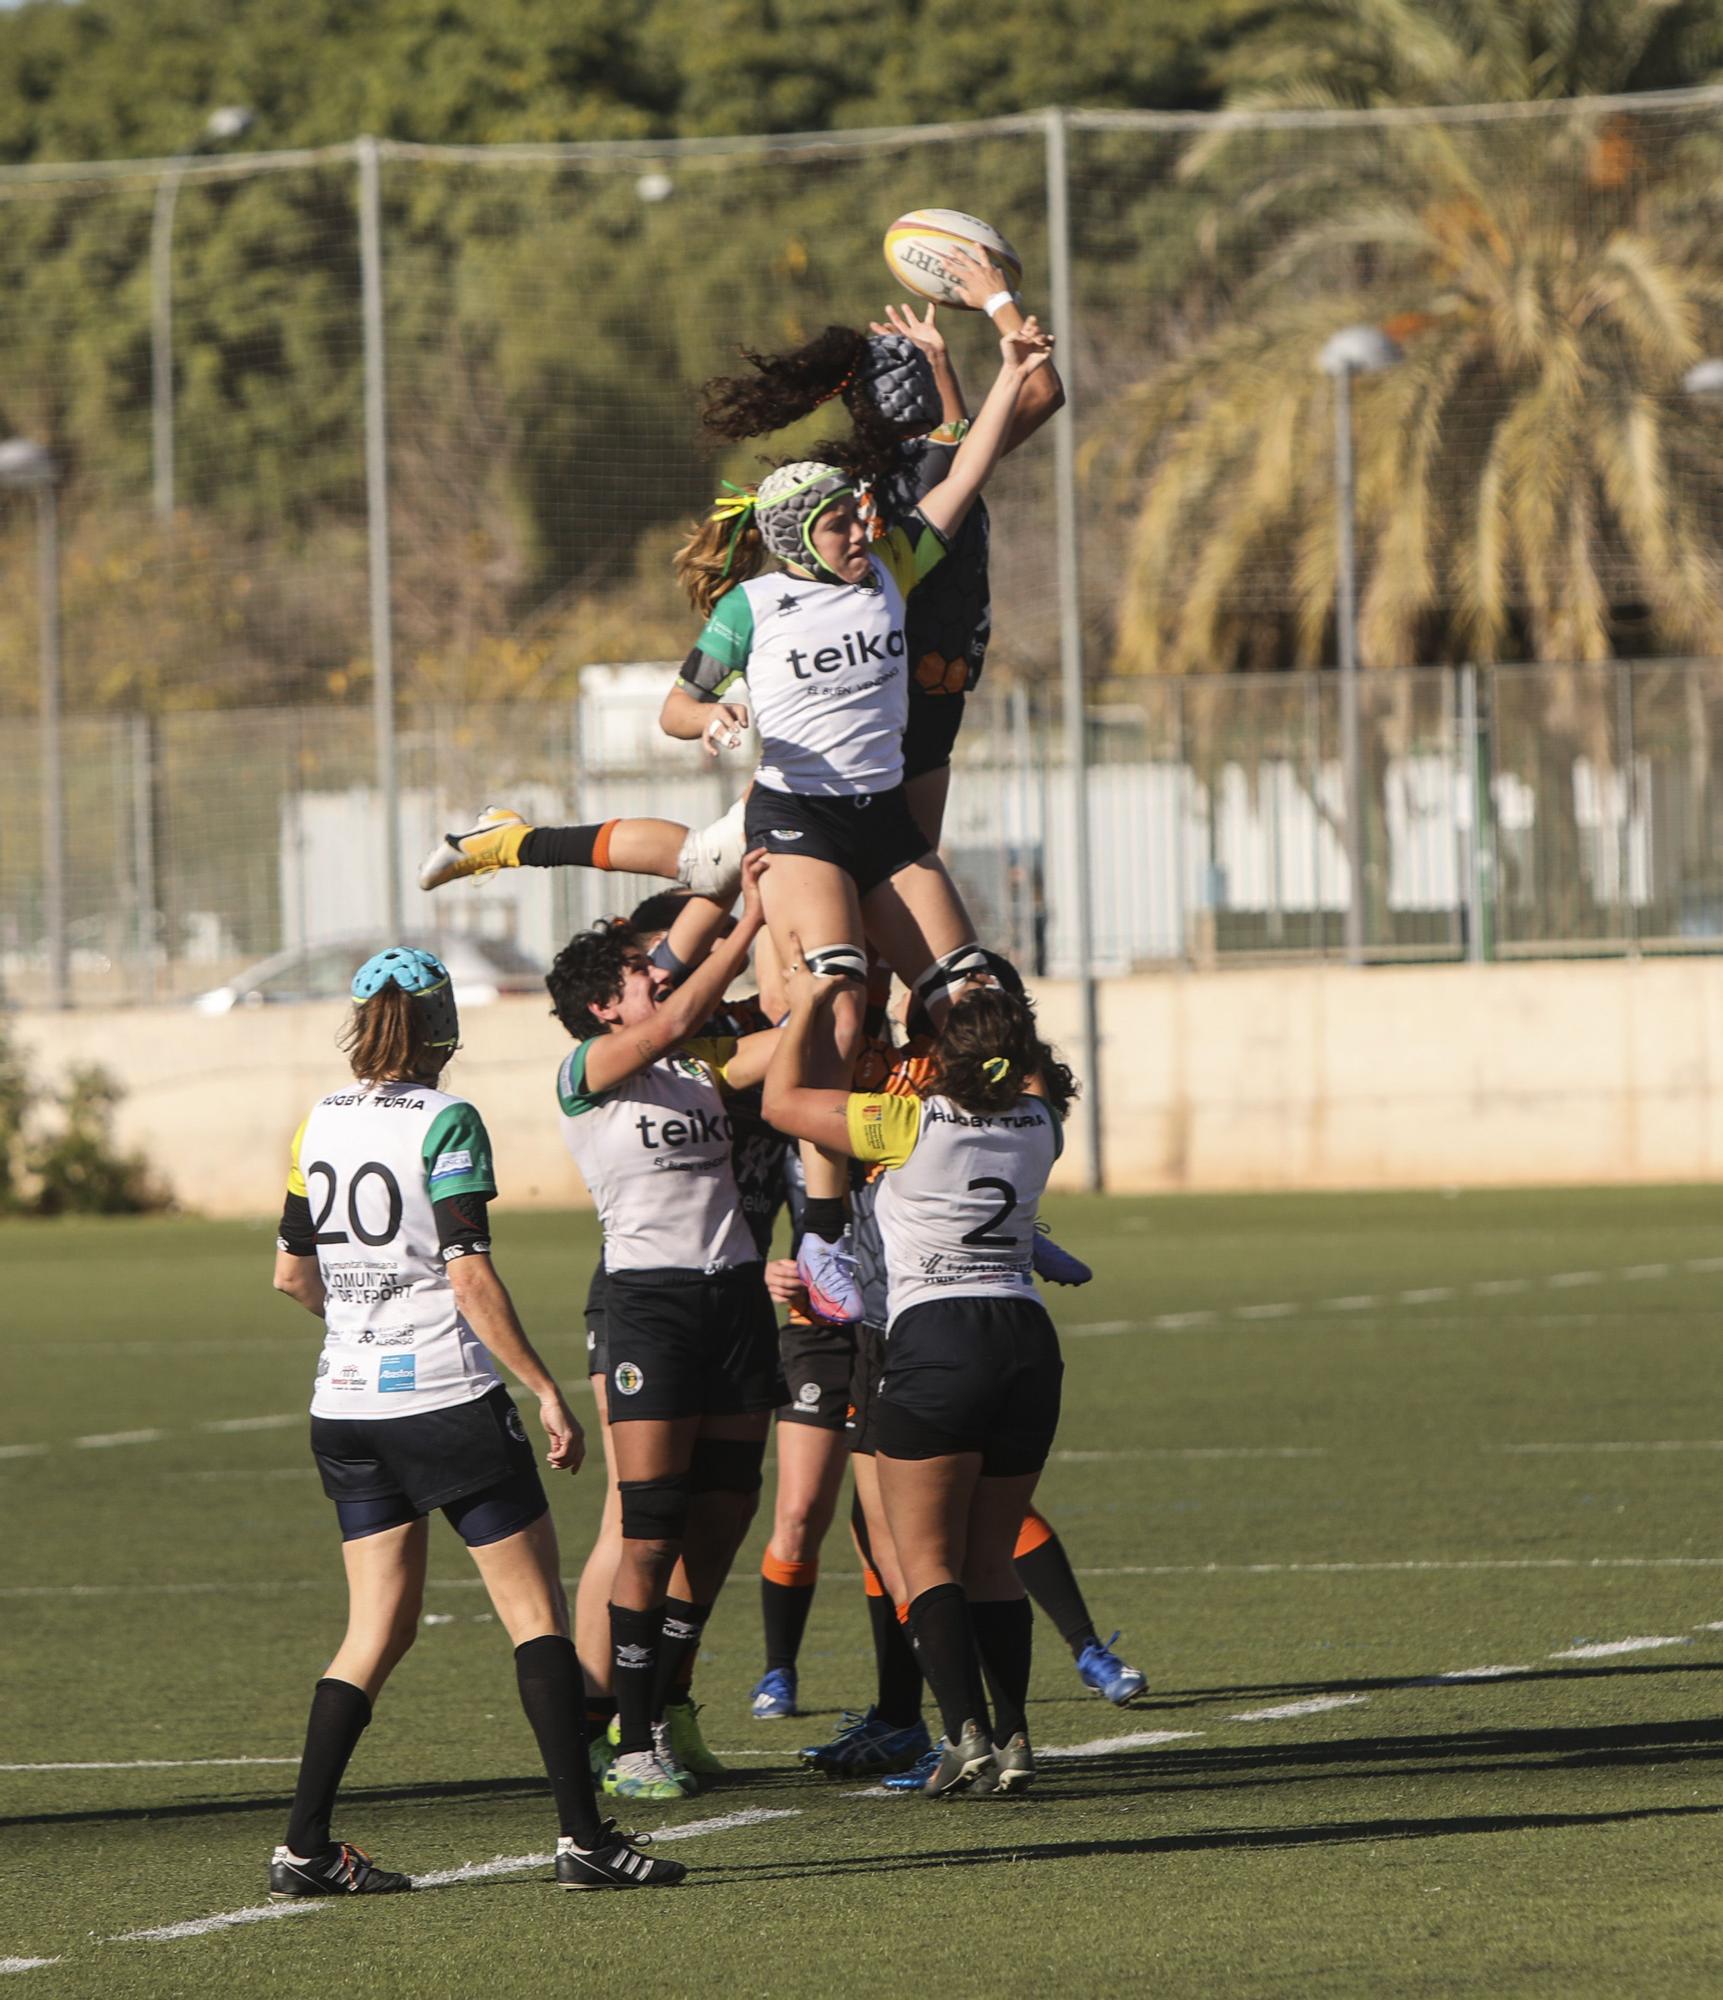 Derbi Teika femenino entre Les Abelles y Rugby Turia (12-18)